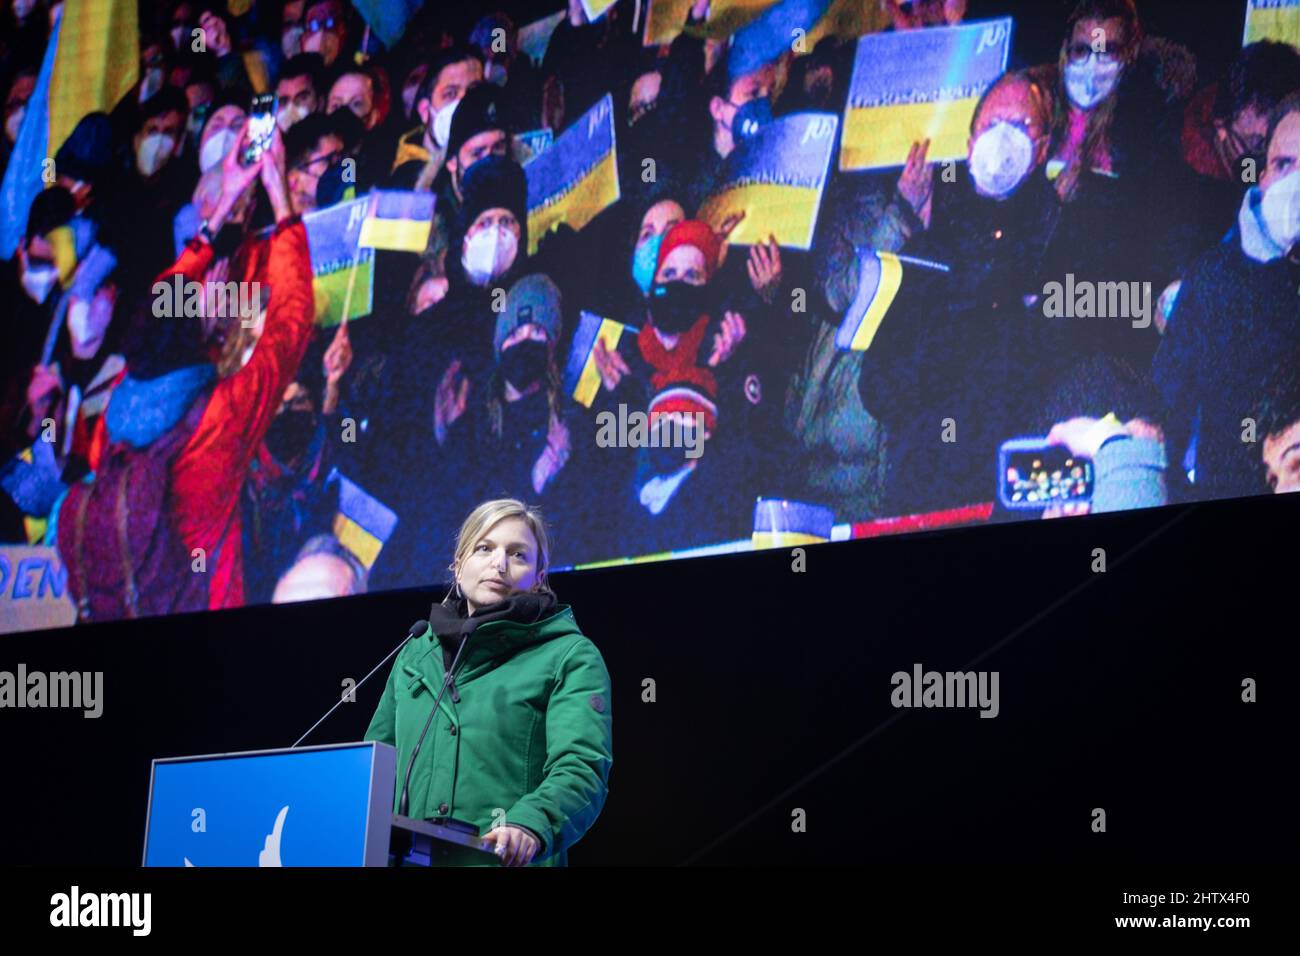 Am 2.. März versammelten sich 2022 45.000 Menschen am Königsplatz in München, um gegen die russische Invasion in der Ukraine zu protestieren und ihre Solidarität mit dem ukrainischen Volk zu zeigen. Die Kundgebung wurde von der SPD organisiert und alle demokratischen Parteien schlossen sich ihr an. Die Vorsitzende der Grünen im Bayerischen Landtag Katharina Schulze spricht. (Foto von Alexander Pohl/Sipa USA) Stockfoto